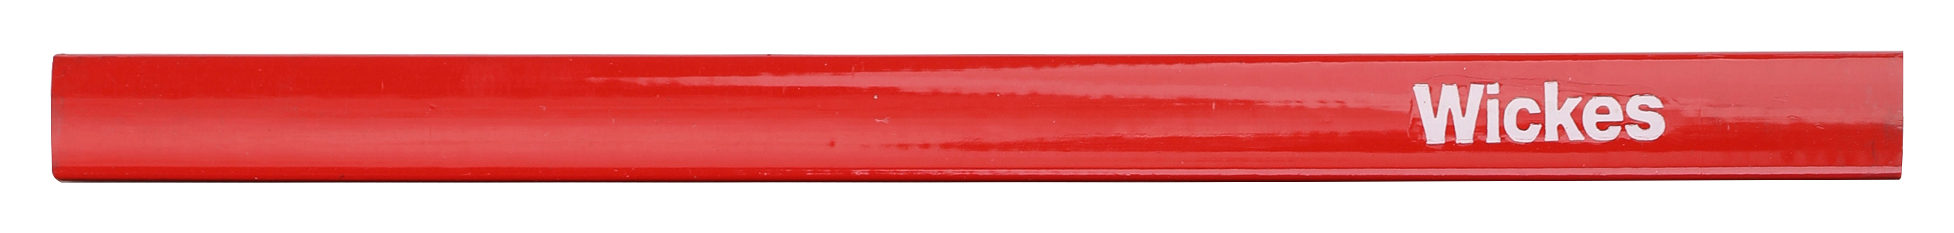 Wickes Single Red Carpenters Pencil